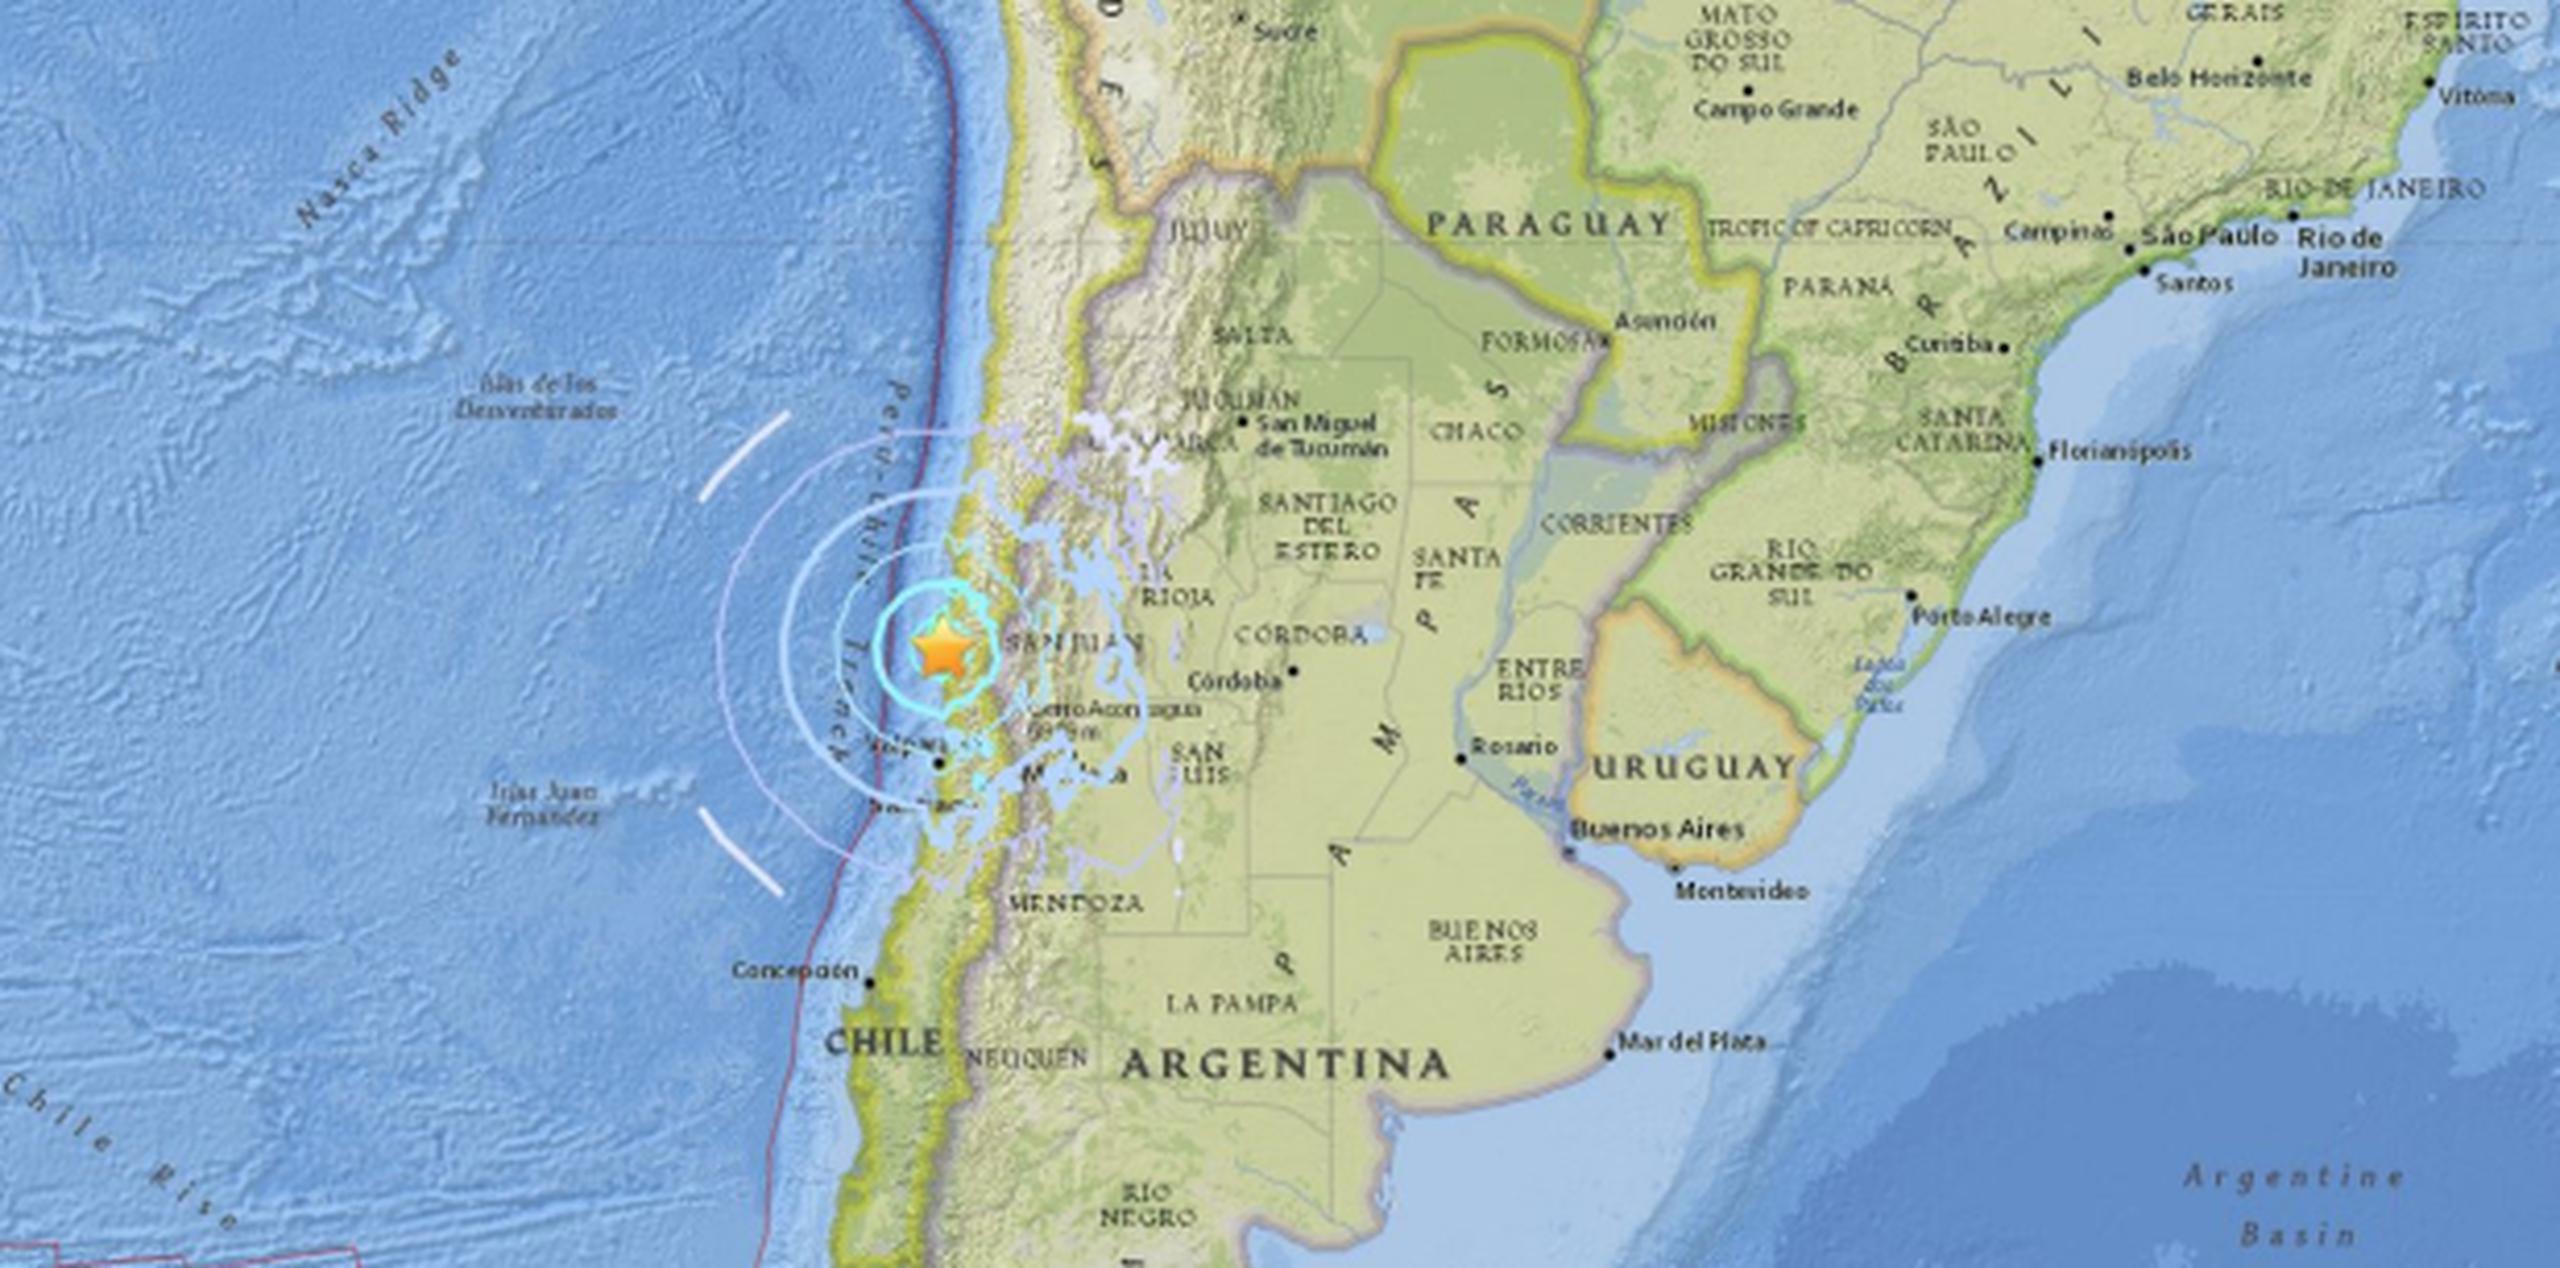 Por estar en el llamado “Cinturón de Fuego” del Pacífico, Chile sufre constantes sismos y periódicos terremotos. (USGS)